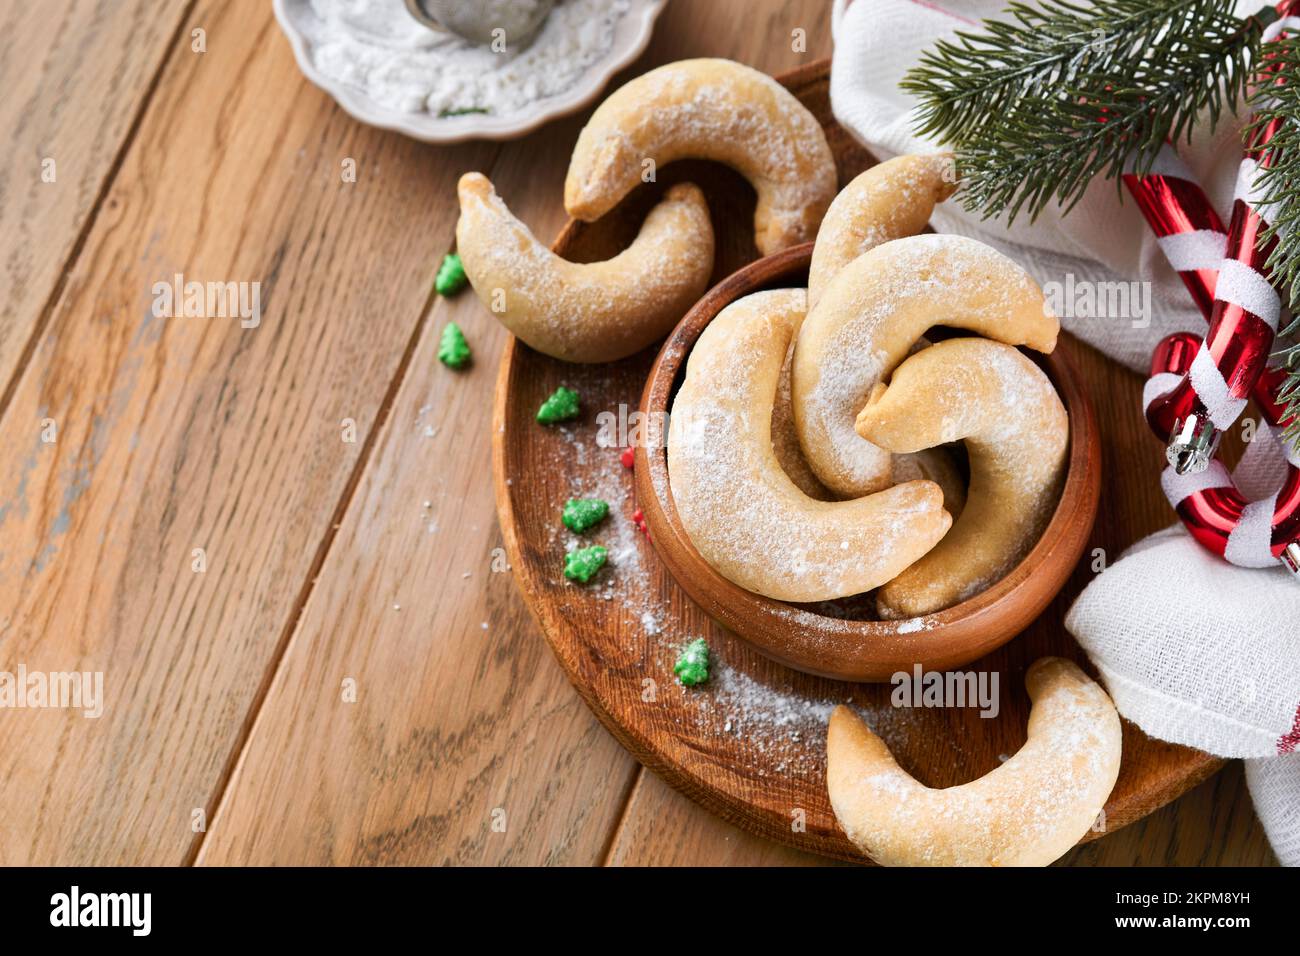 Weihnachtsplätzchen Crescents. Hausgemachte traditionelle Weihnachtskekse Vanillekies in rustikalem Teller mit weihnachtsdekorationen auf altem Holz rustikal Stockfoto